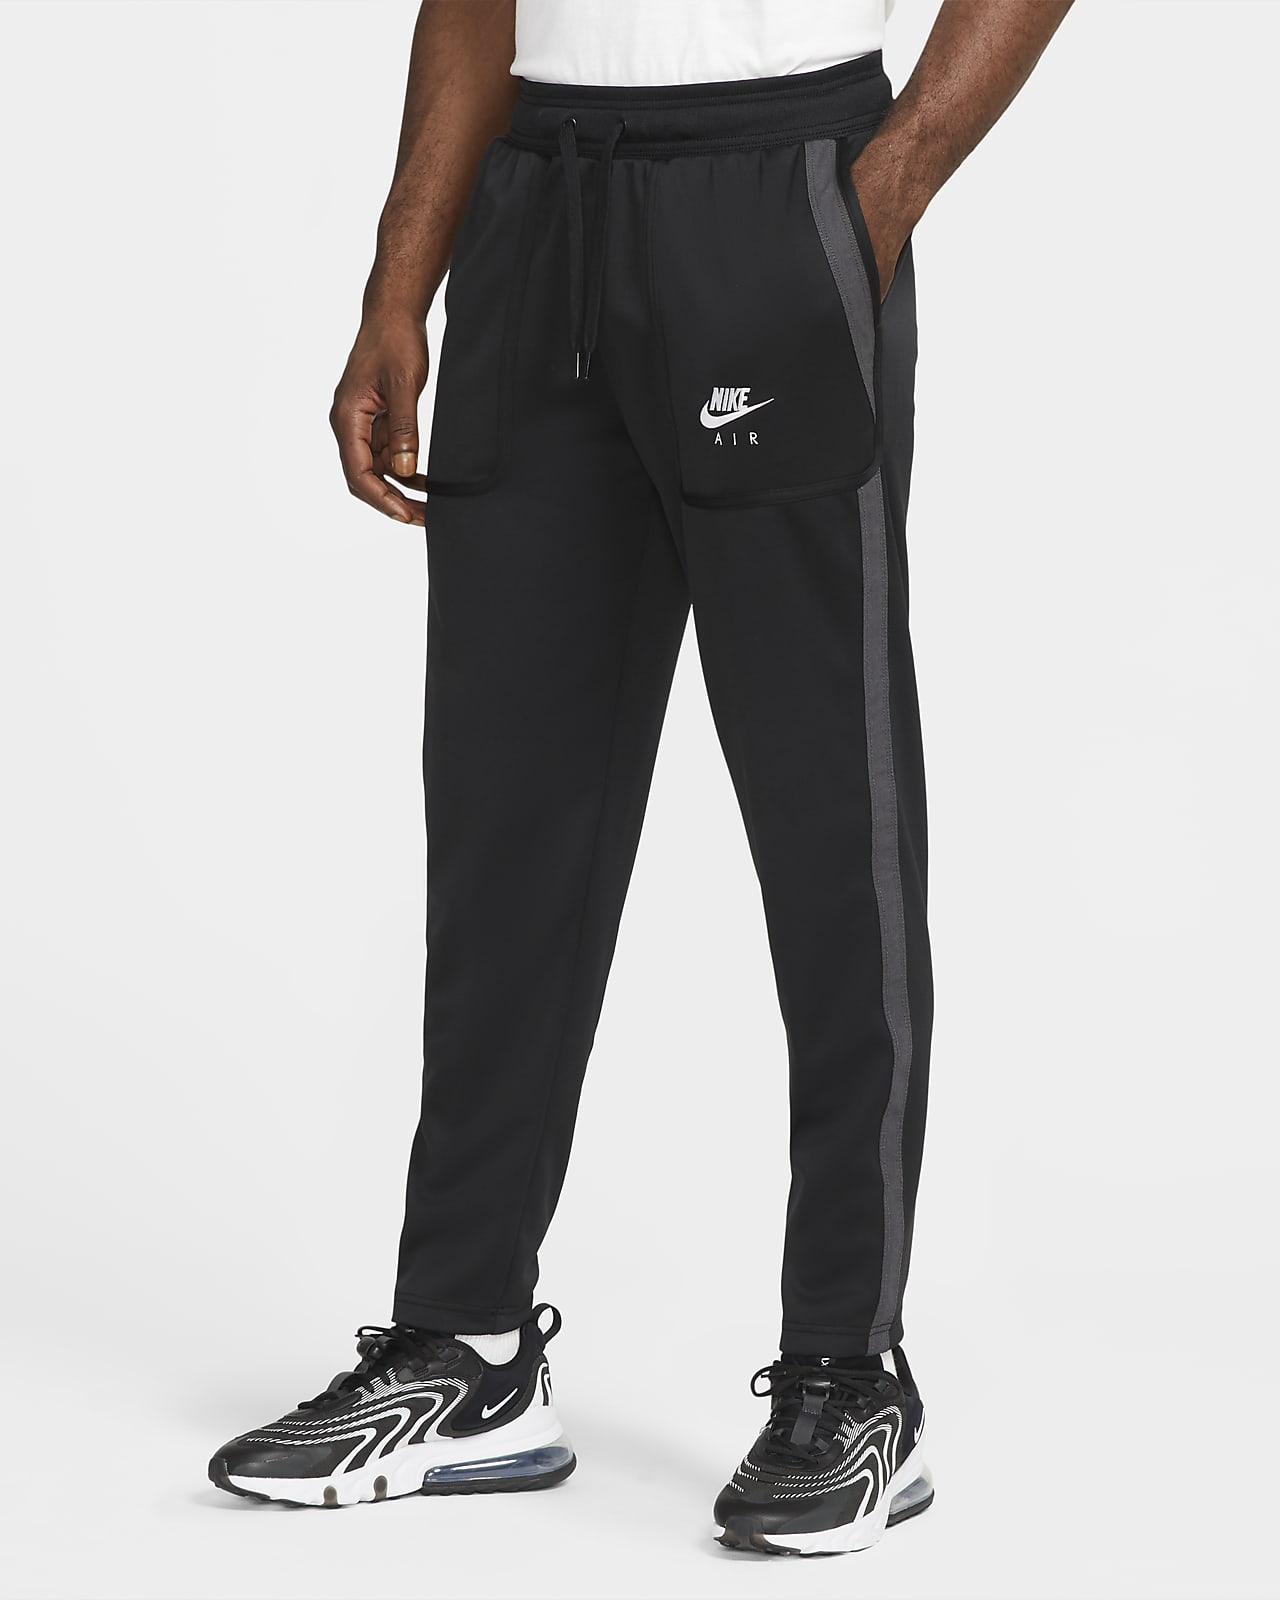 Nike Air Men's Trousers. Nike ZA